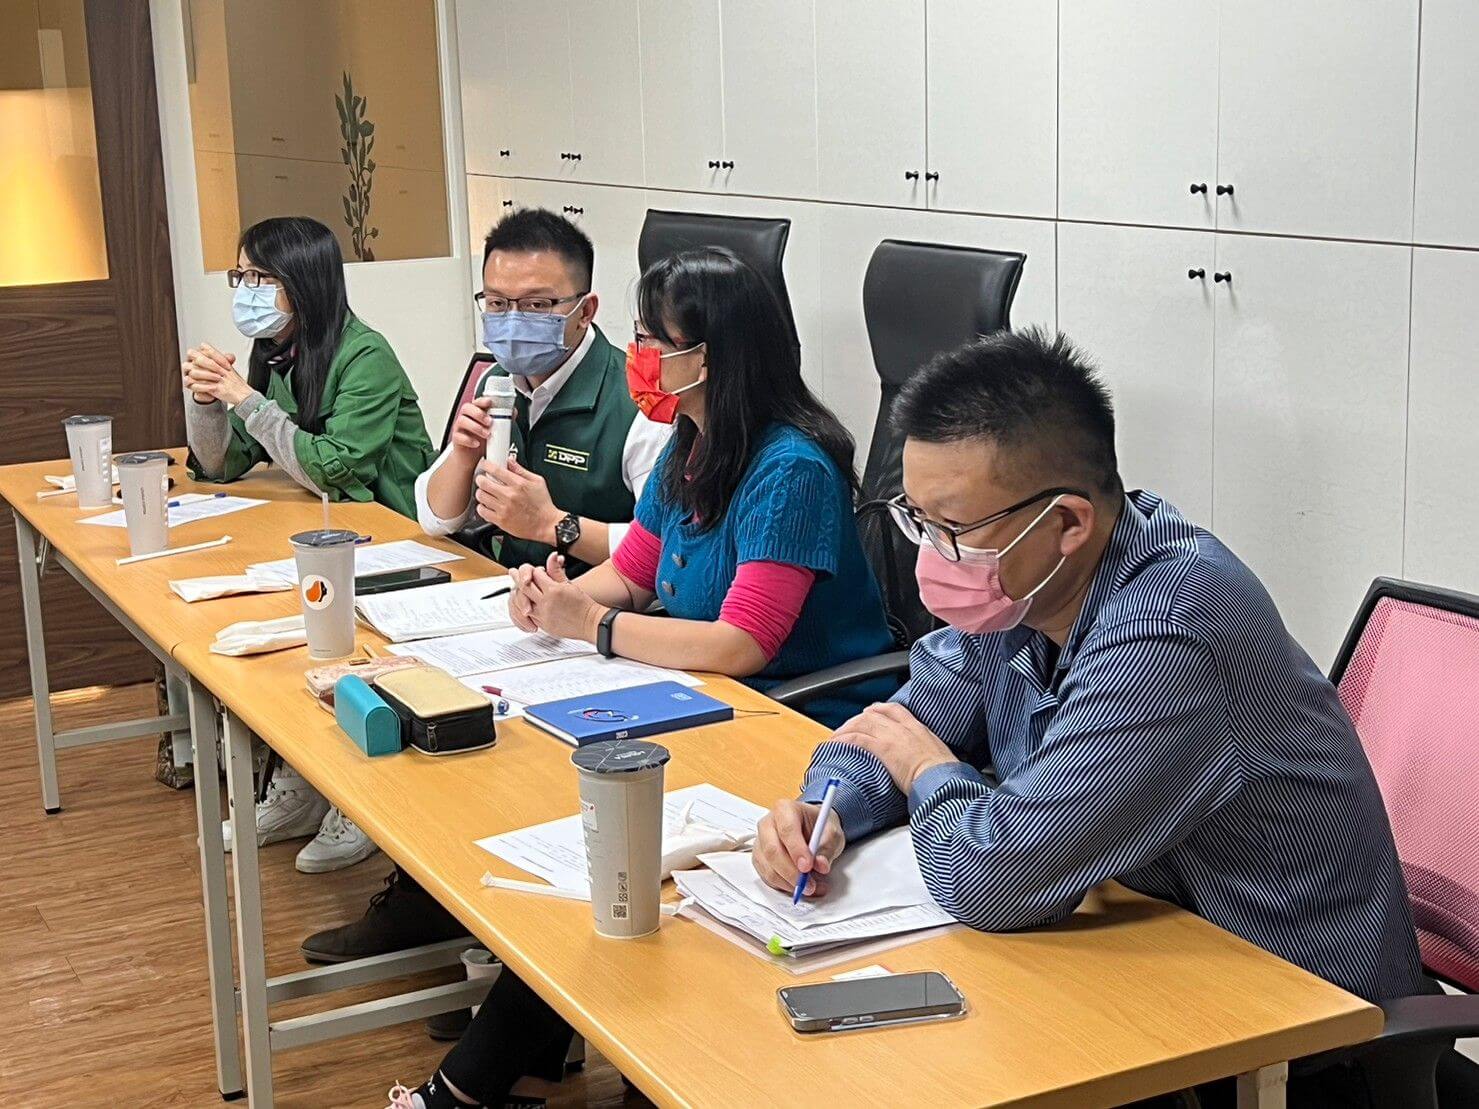 台南教育產業工會促公私協力 讓視障生學習零落差